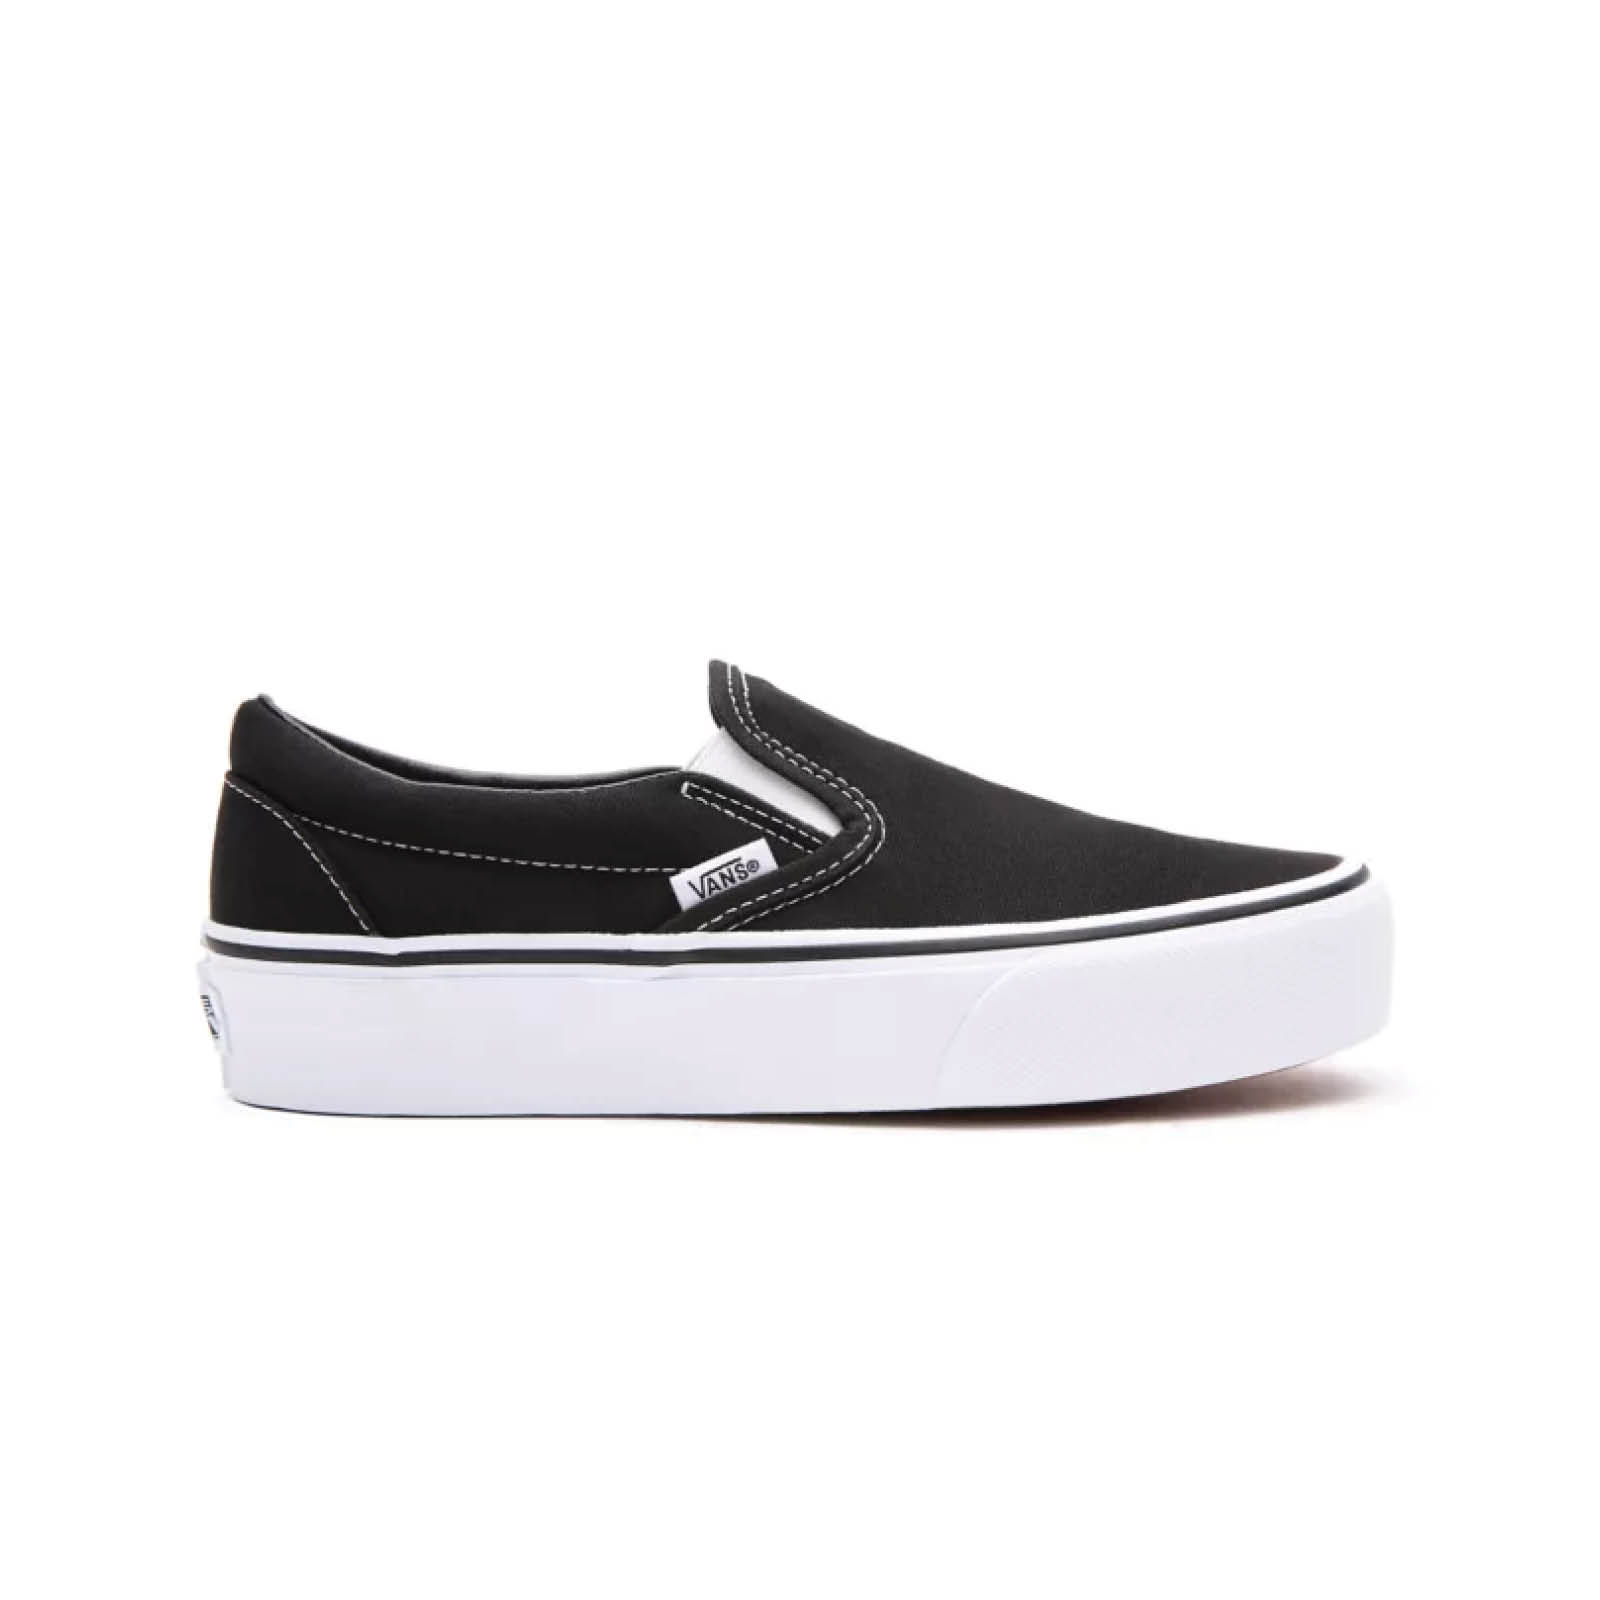 Ανδρικά > Παπούτσια > Sneaker > Παπούτσι Low Cut Vans - UA CLASSIC SLIP-ON P BLACK - BLACK